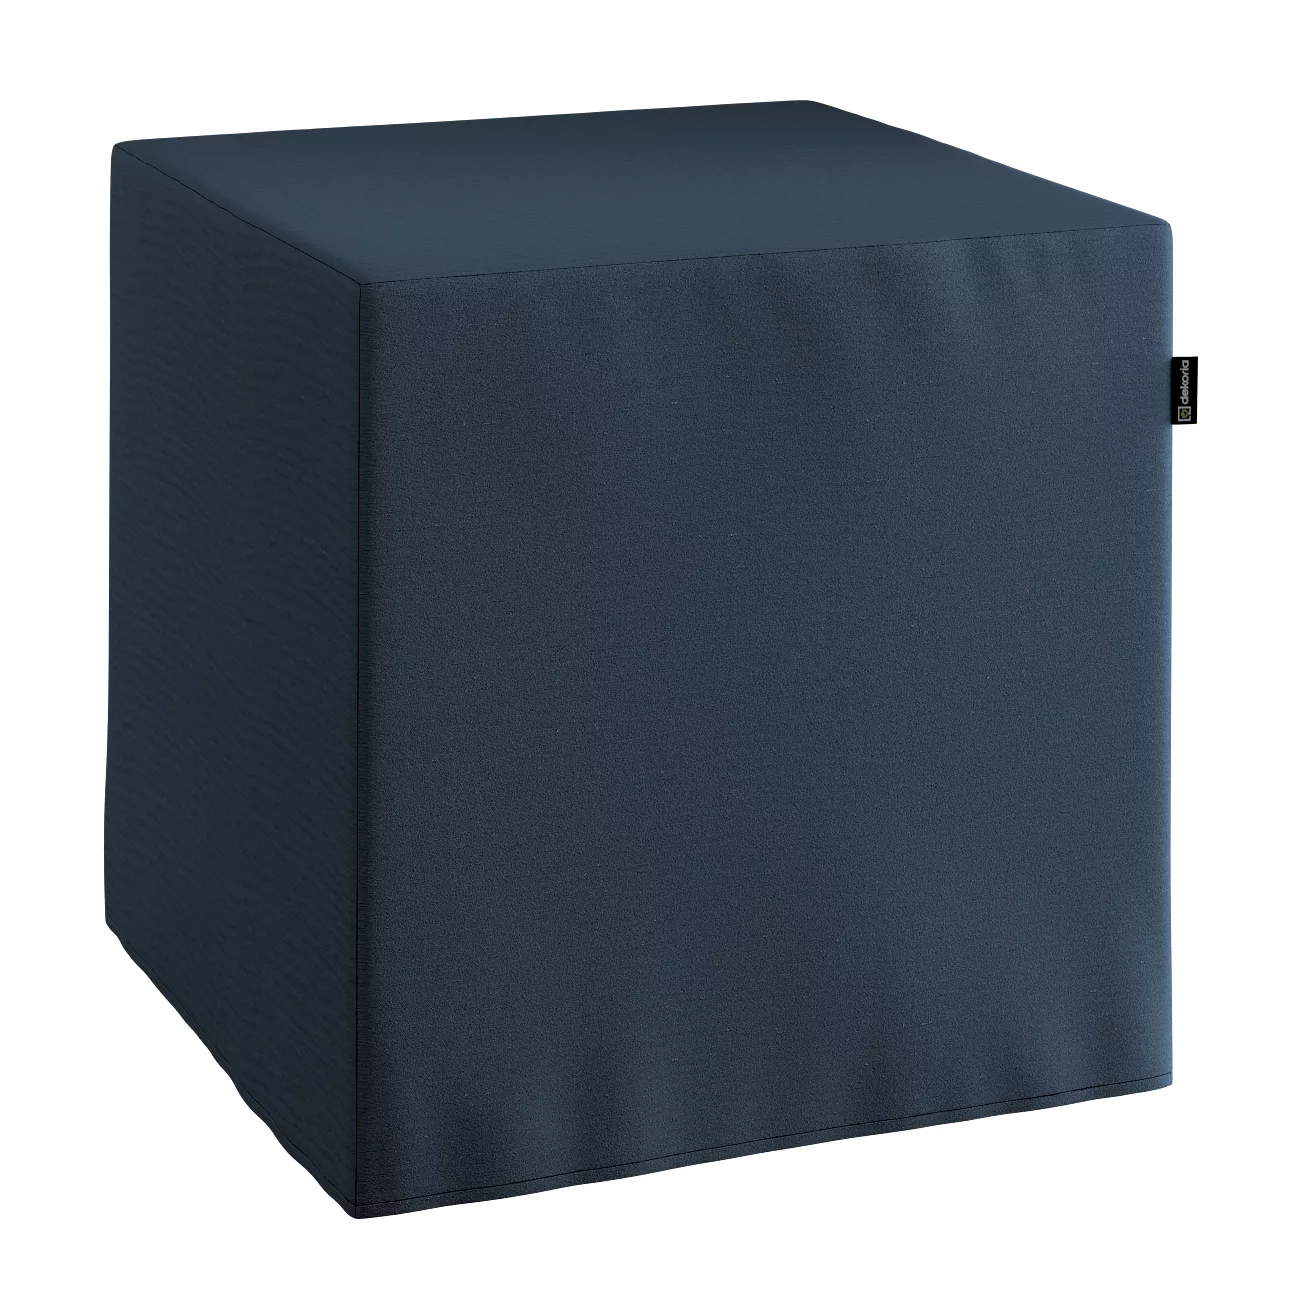 Bezug für Sitzwürfel, marinenblau, Bezug für Sitzwürfel 40 x 40 x 40 cm, Qu günstig online kaufen